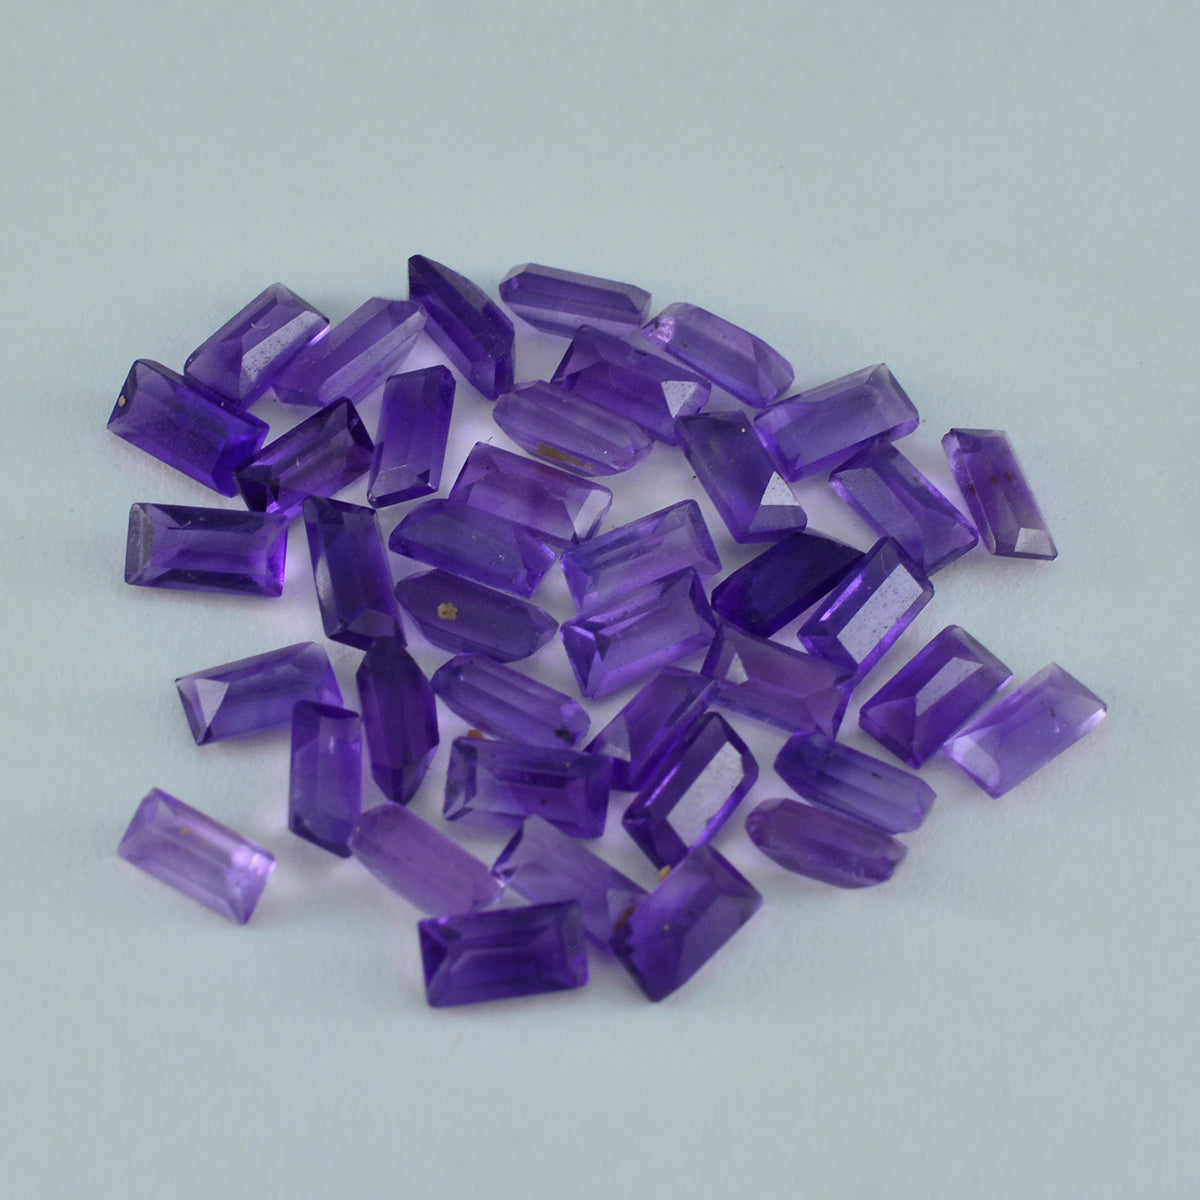 Riyogems 1PC Genuine Purple Amethyst Faceted 4x8 mm Baguette Shape nice-looking Quality Loose Gemstone